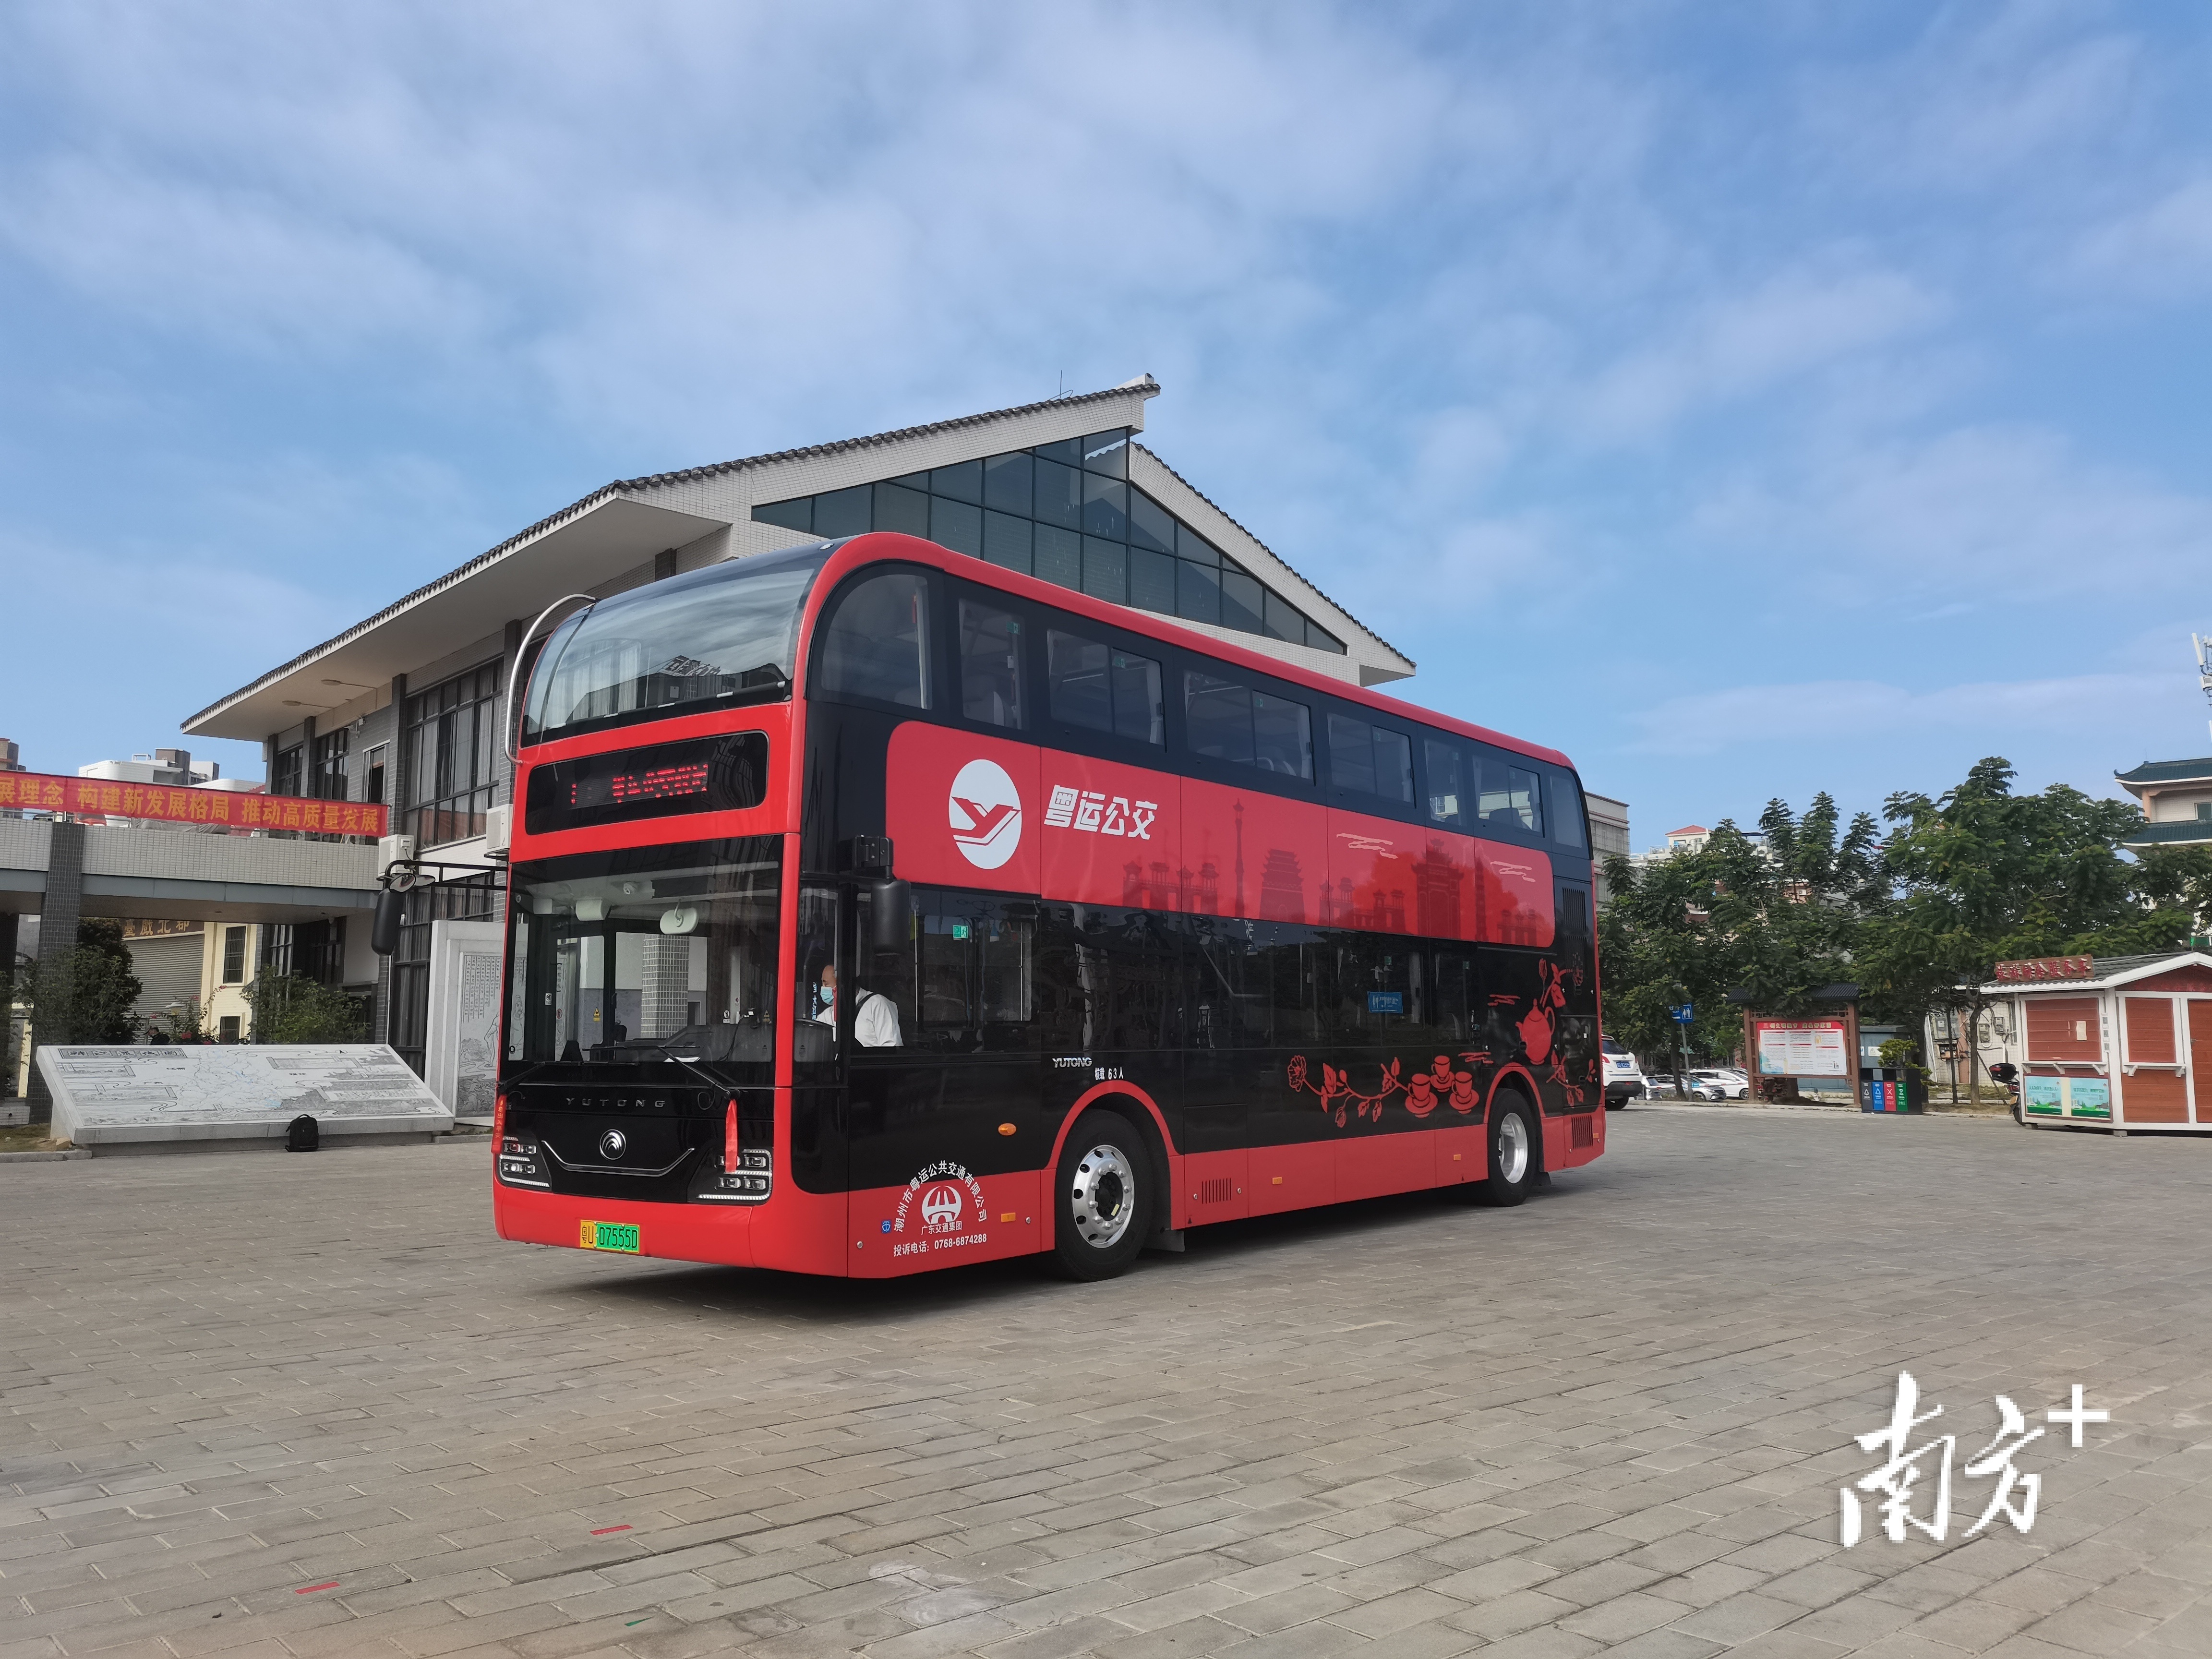 该双层观光巴士为纯电动新能源“零排放”车辆，车身采用一体化设计，以“中国红”为主色调。